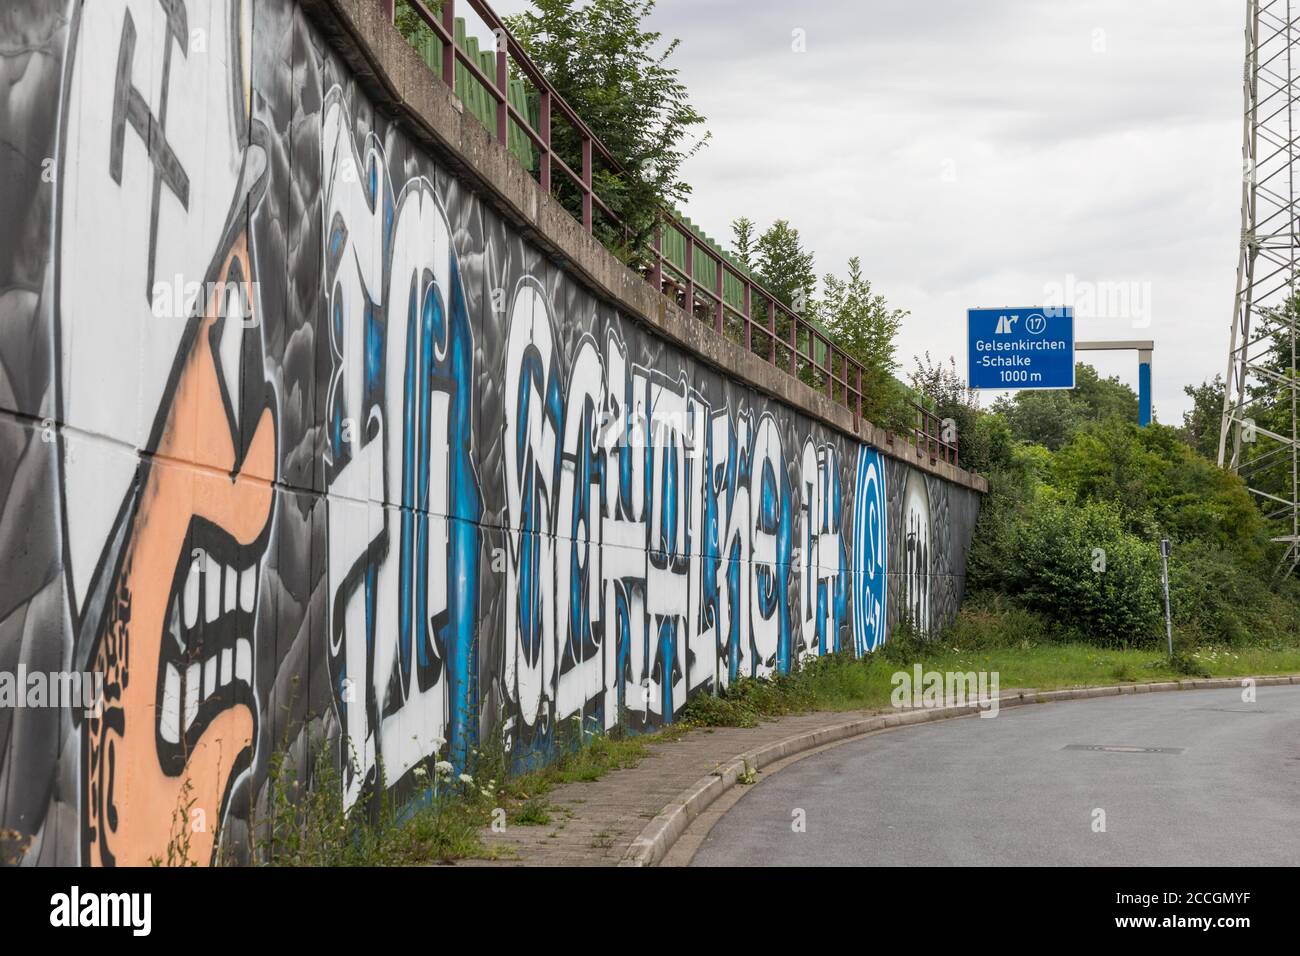 Schalke fan graffiti and motorway exit, Schalker Meile fan area of FC Schalke 04 Football club, in Gelsenkirchen, North Rhine-Westphalia, Germany Stock Photo